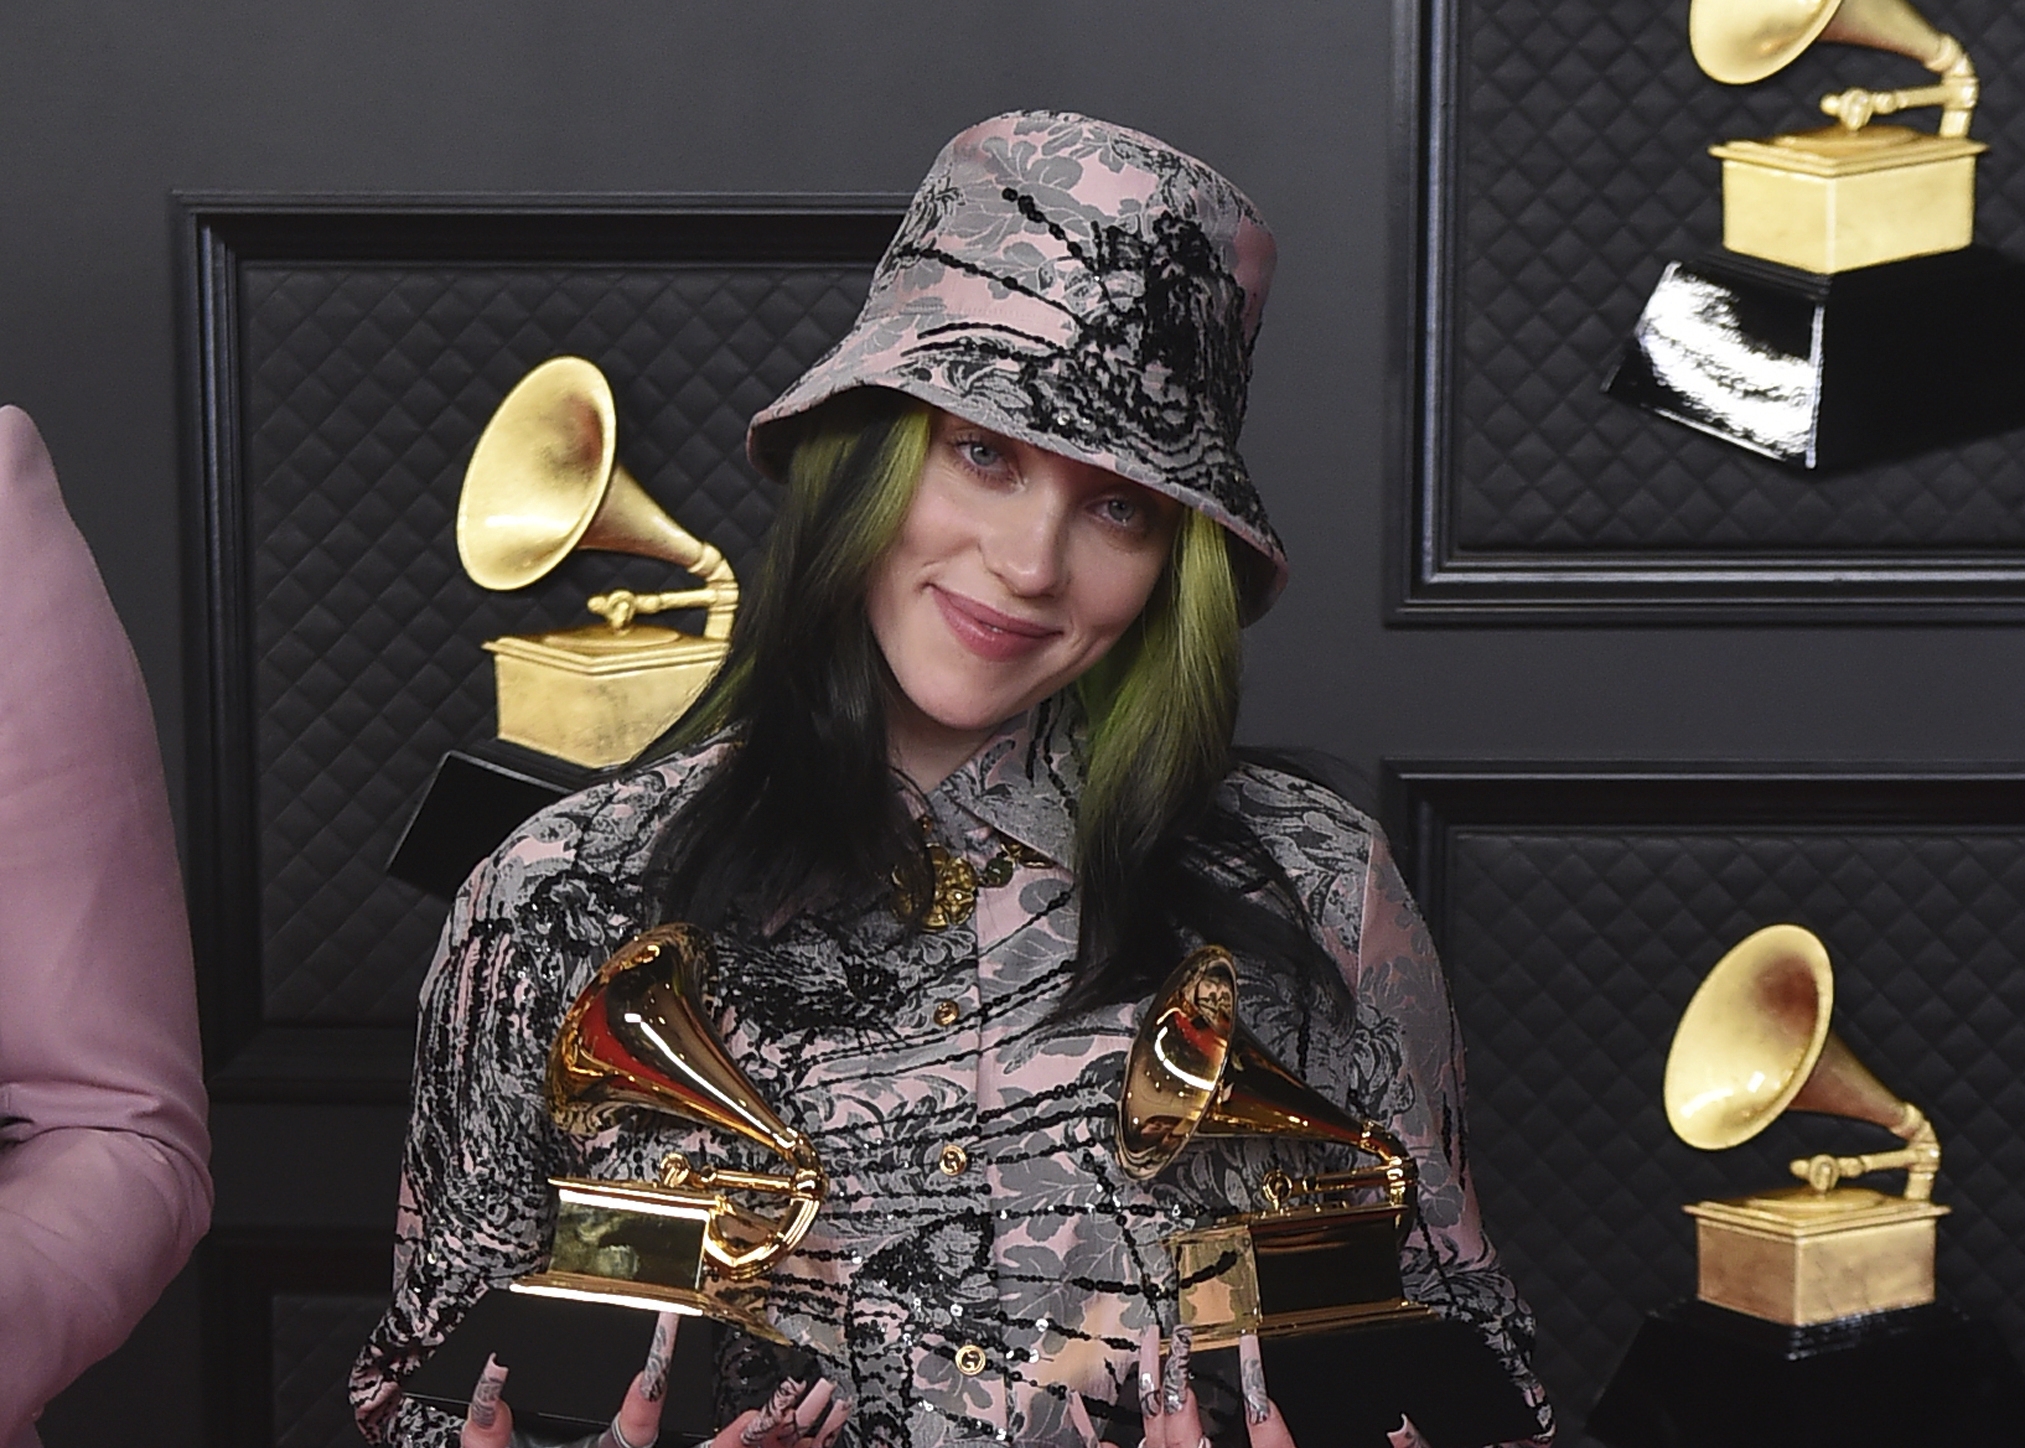 Billie Eilish at the Grammy Awards in 2021.